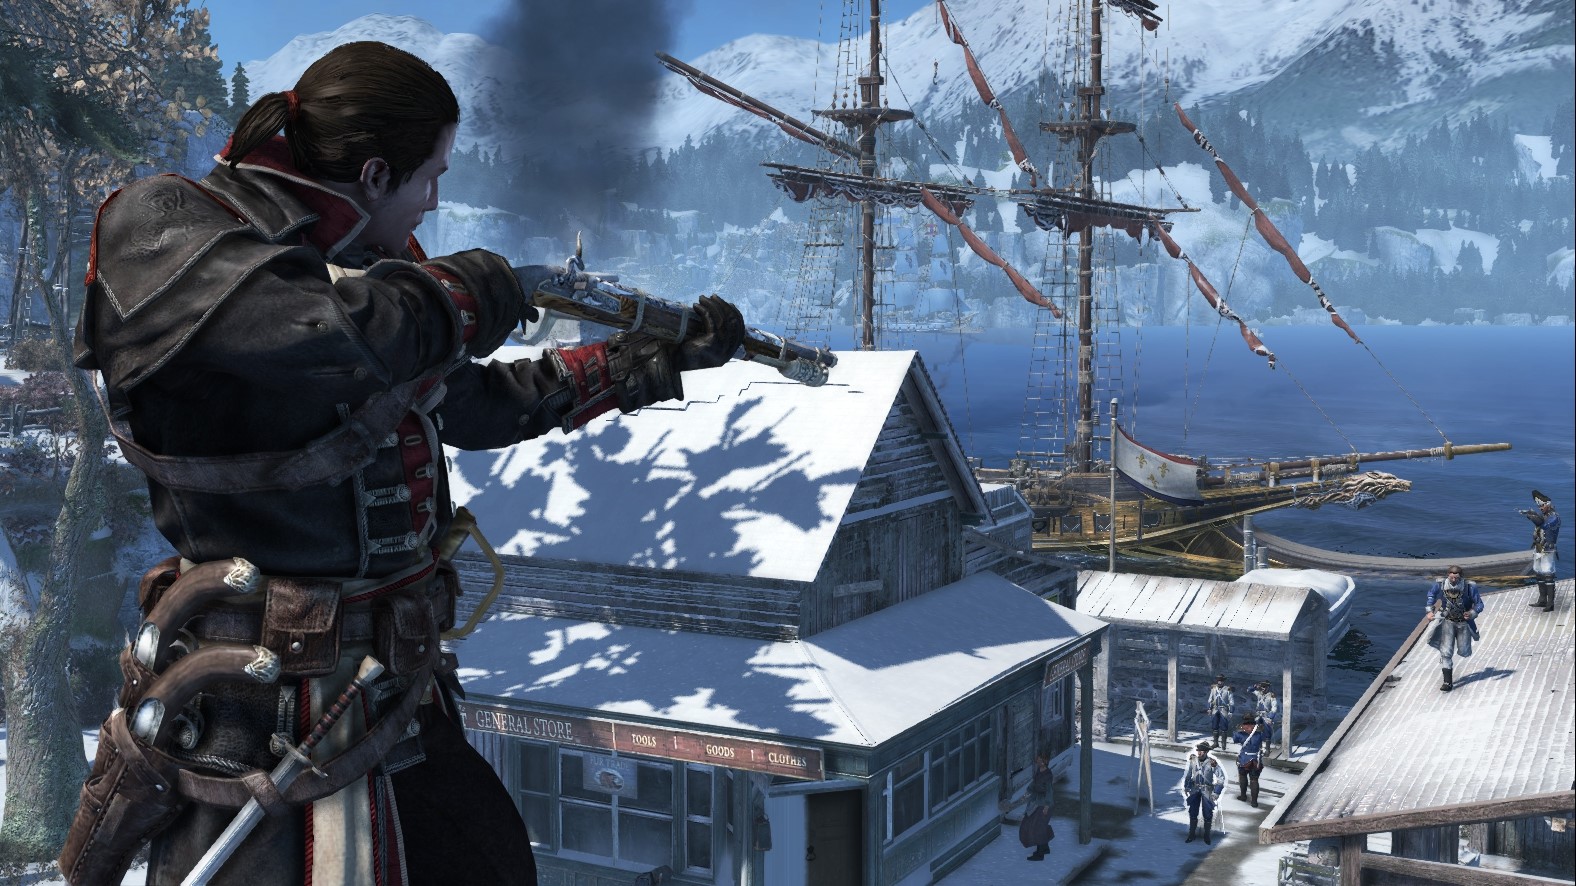 Assassins Creed Rogue (Uplay key) -- RU